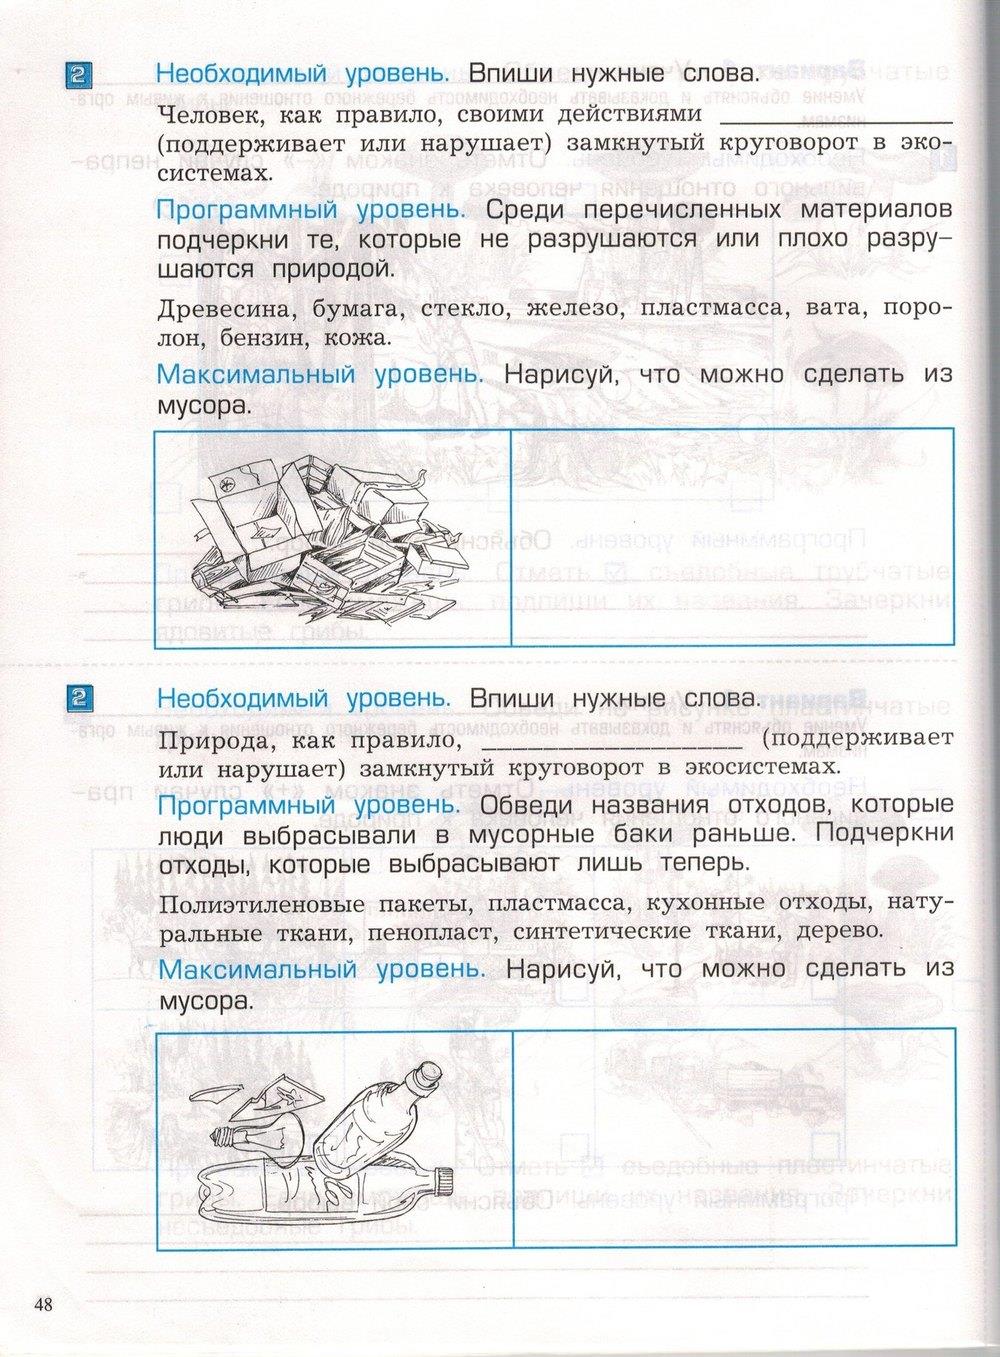 гдз 3 класс проверочные и контрольные работы часть 1 страница 48 окружающий мир Вахрушев, Бурский, Родыгина